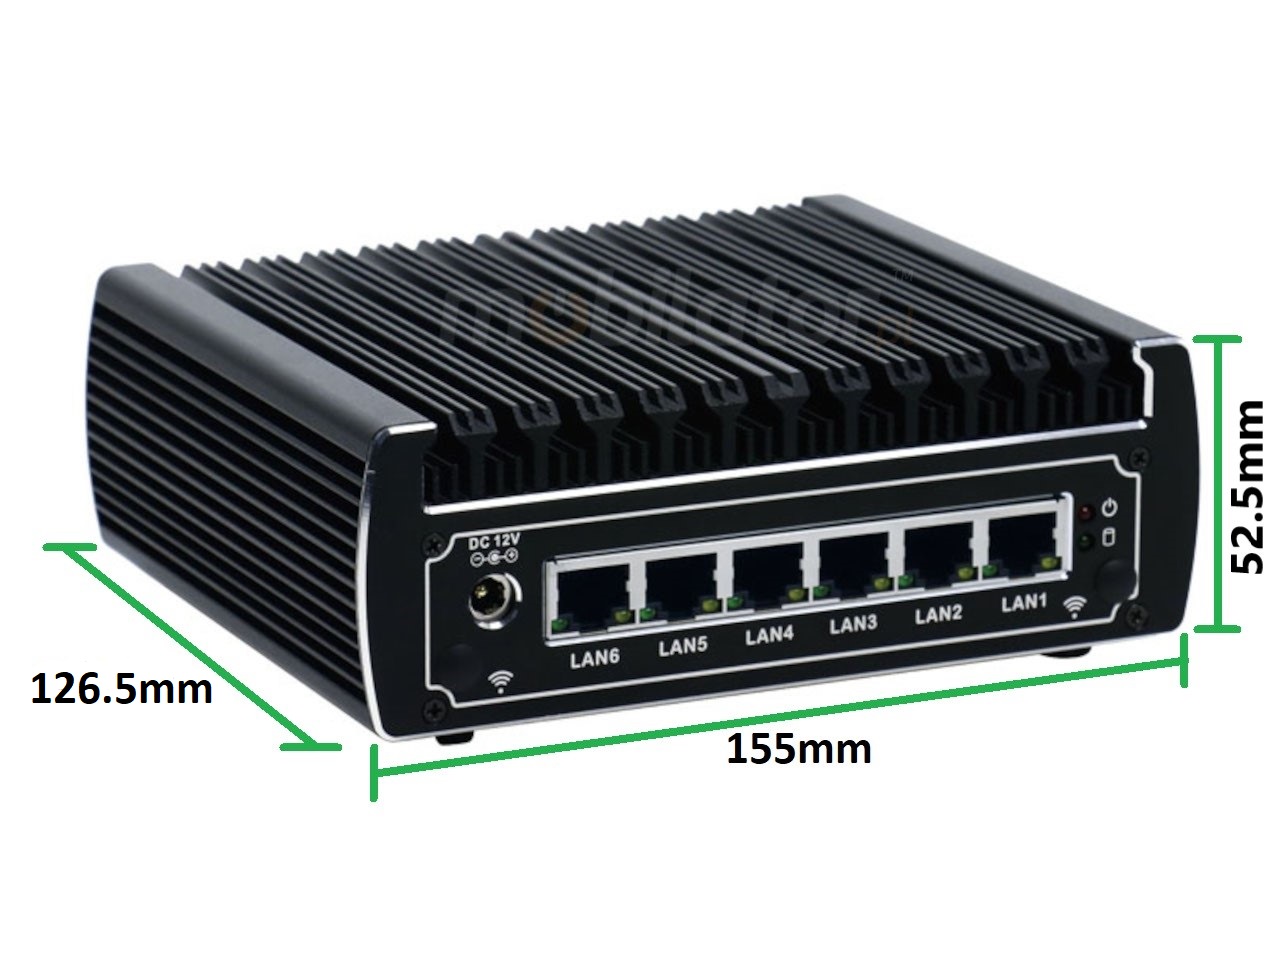   IBOX N133 v.17, wymiary HDD SSD DDR4 WIFI BLUETOOTH, przemysłowy, mały, szybki, niezawodny, fanless, industrial, small, LAN, INTEL i3